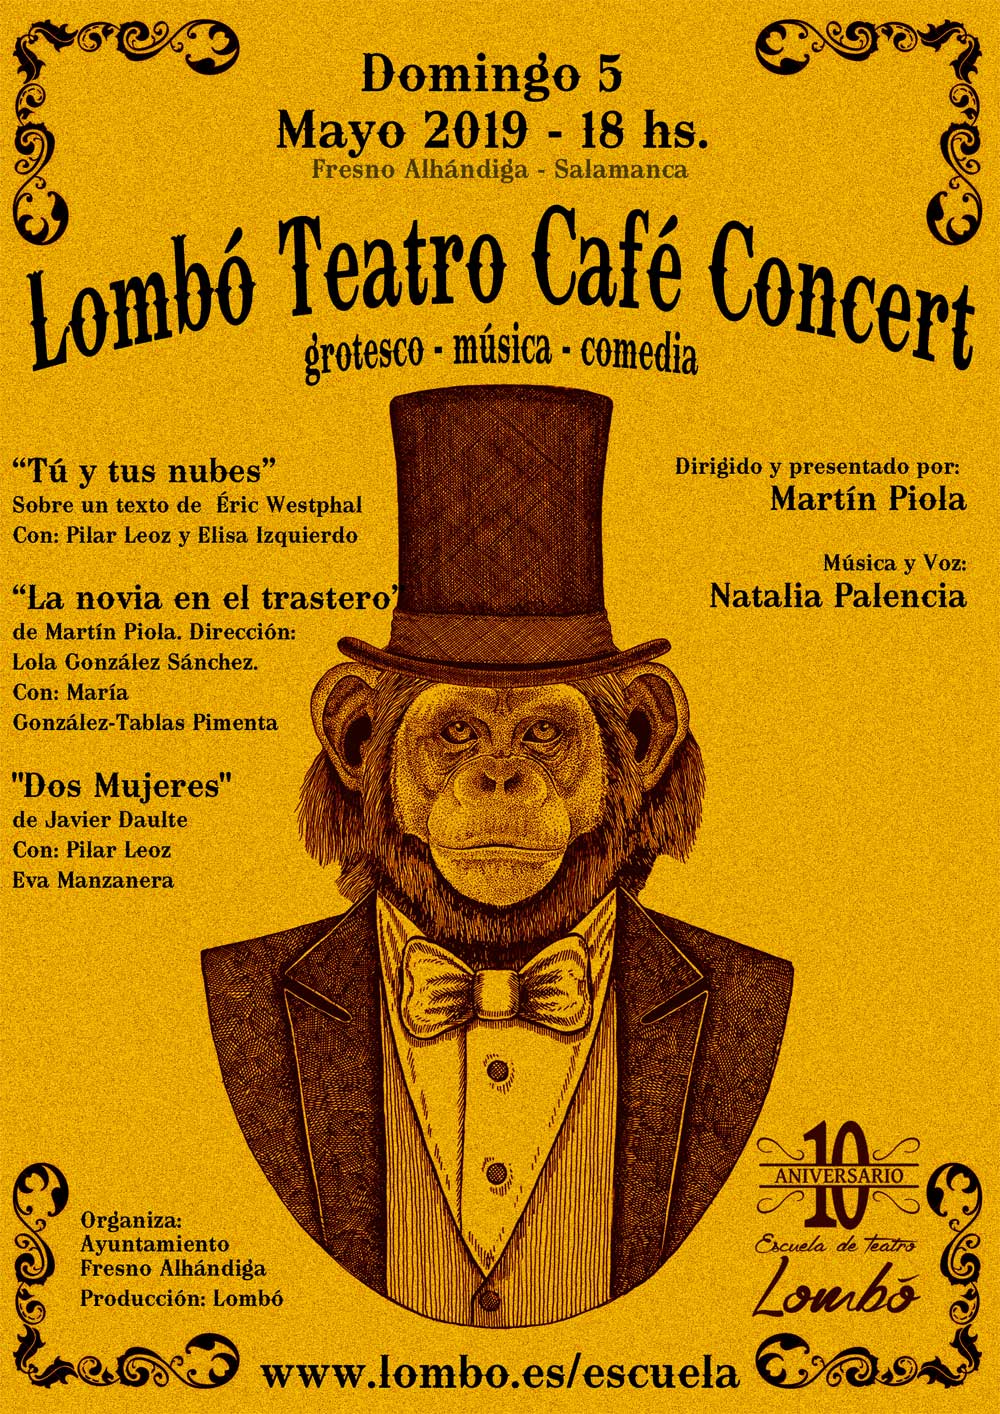 Lombó Teatro Café Concert